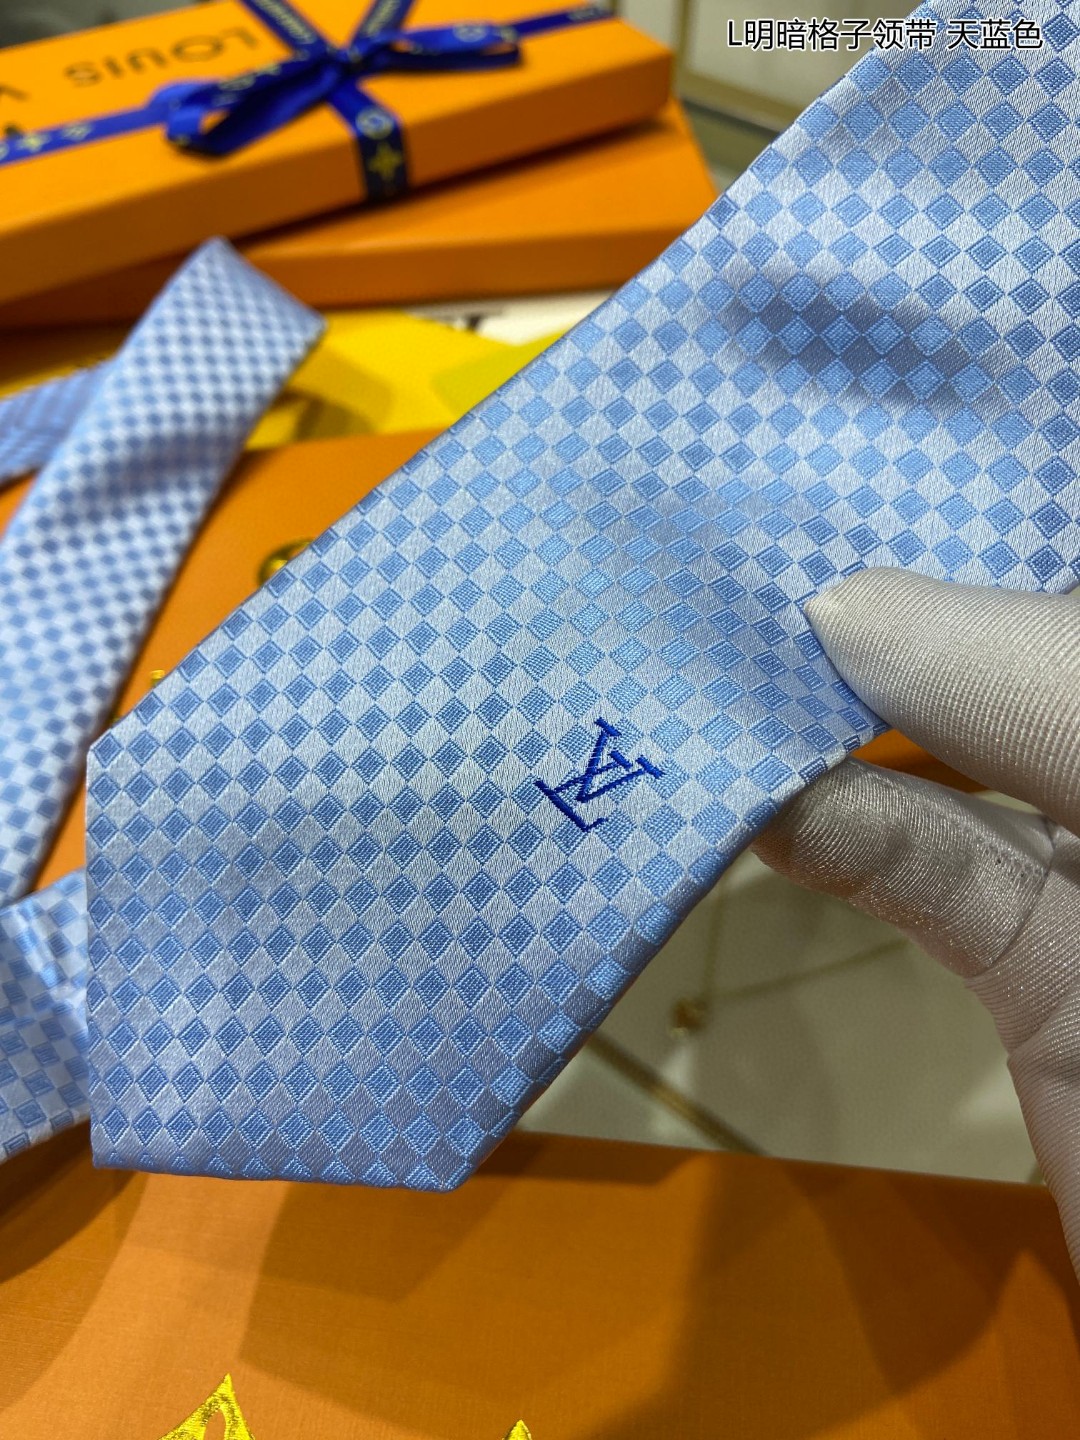 专柜同步男士领带系列L明暗格子领带稀有展现精湛手工与时尚优雅的理想选择这款领带将标志性的Damier图案